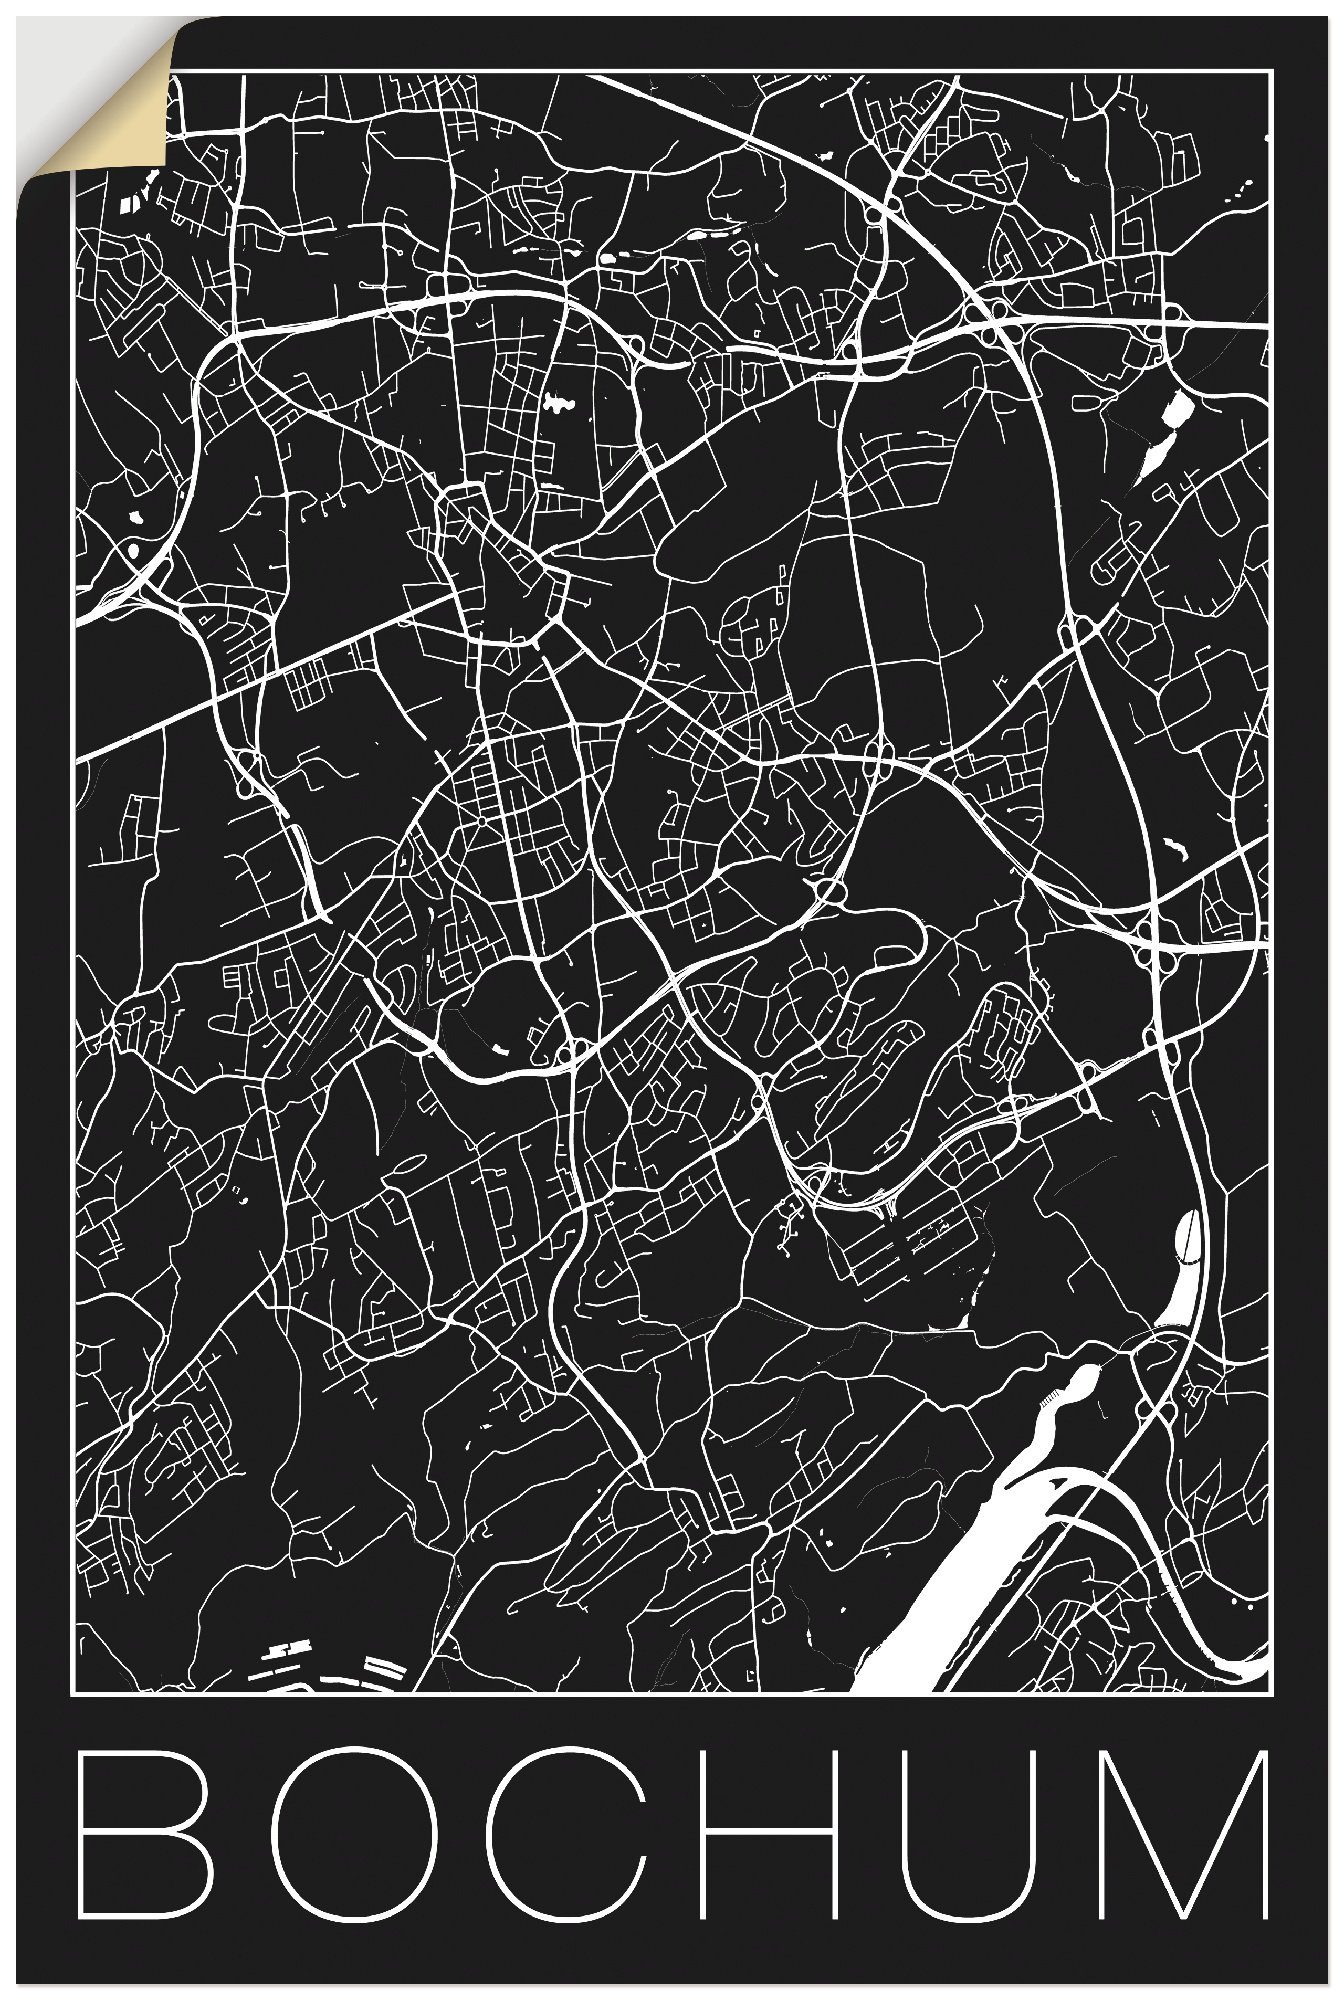 Artland Artprint Retro kaart Bochum Duitsland zwart in vele afmetingen & productsoorten - artprint van aluminium / artprint voor buiten, artprint op linnen, poster, muursticker / w